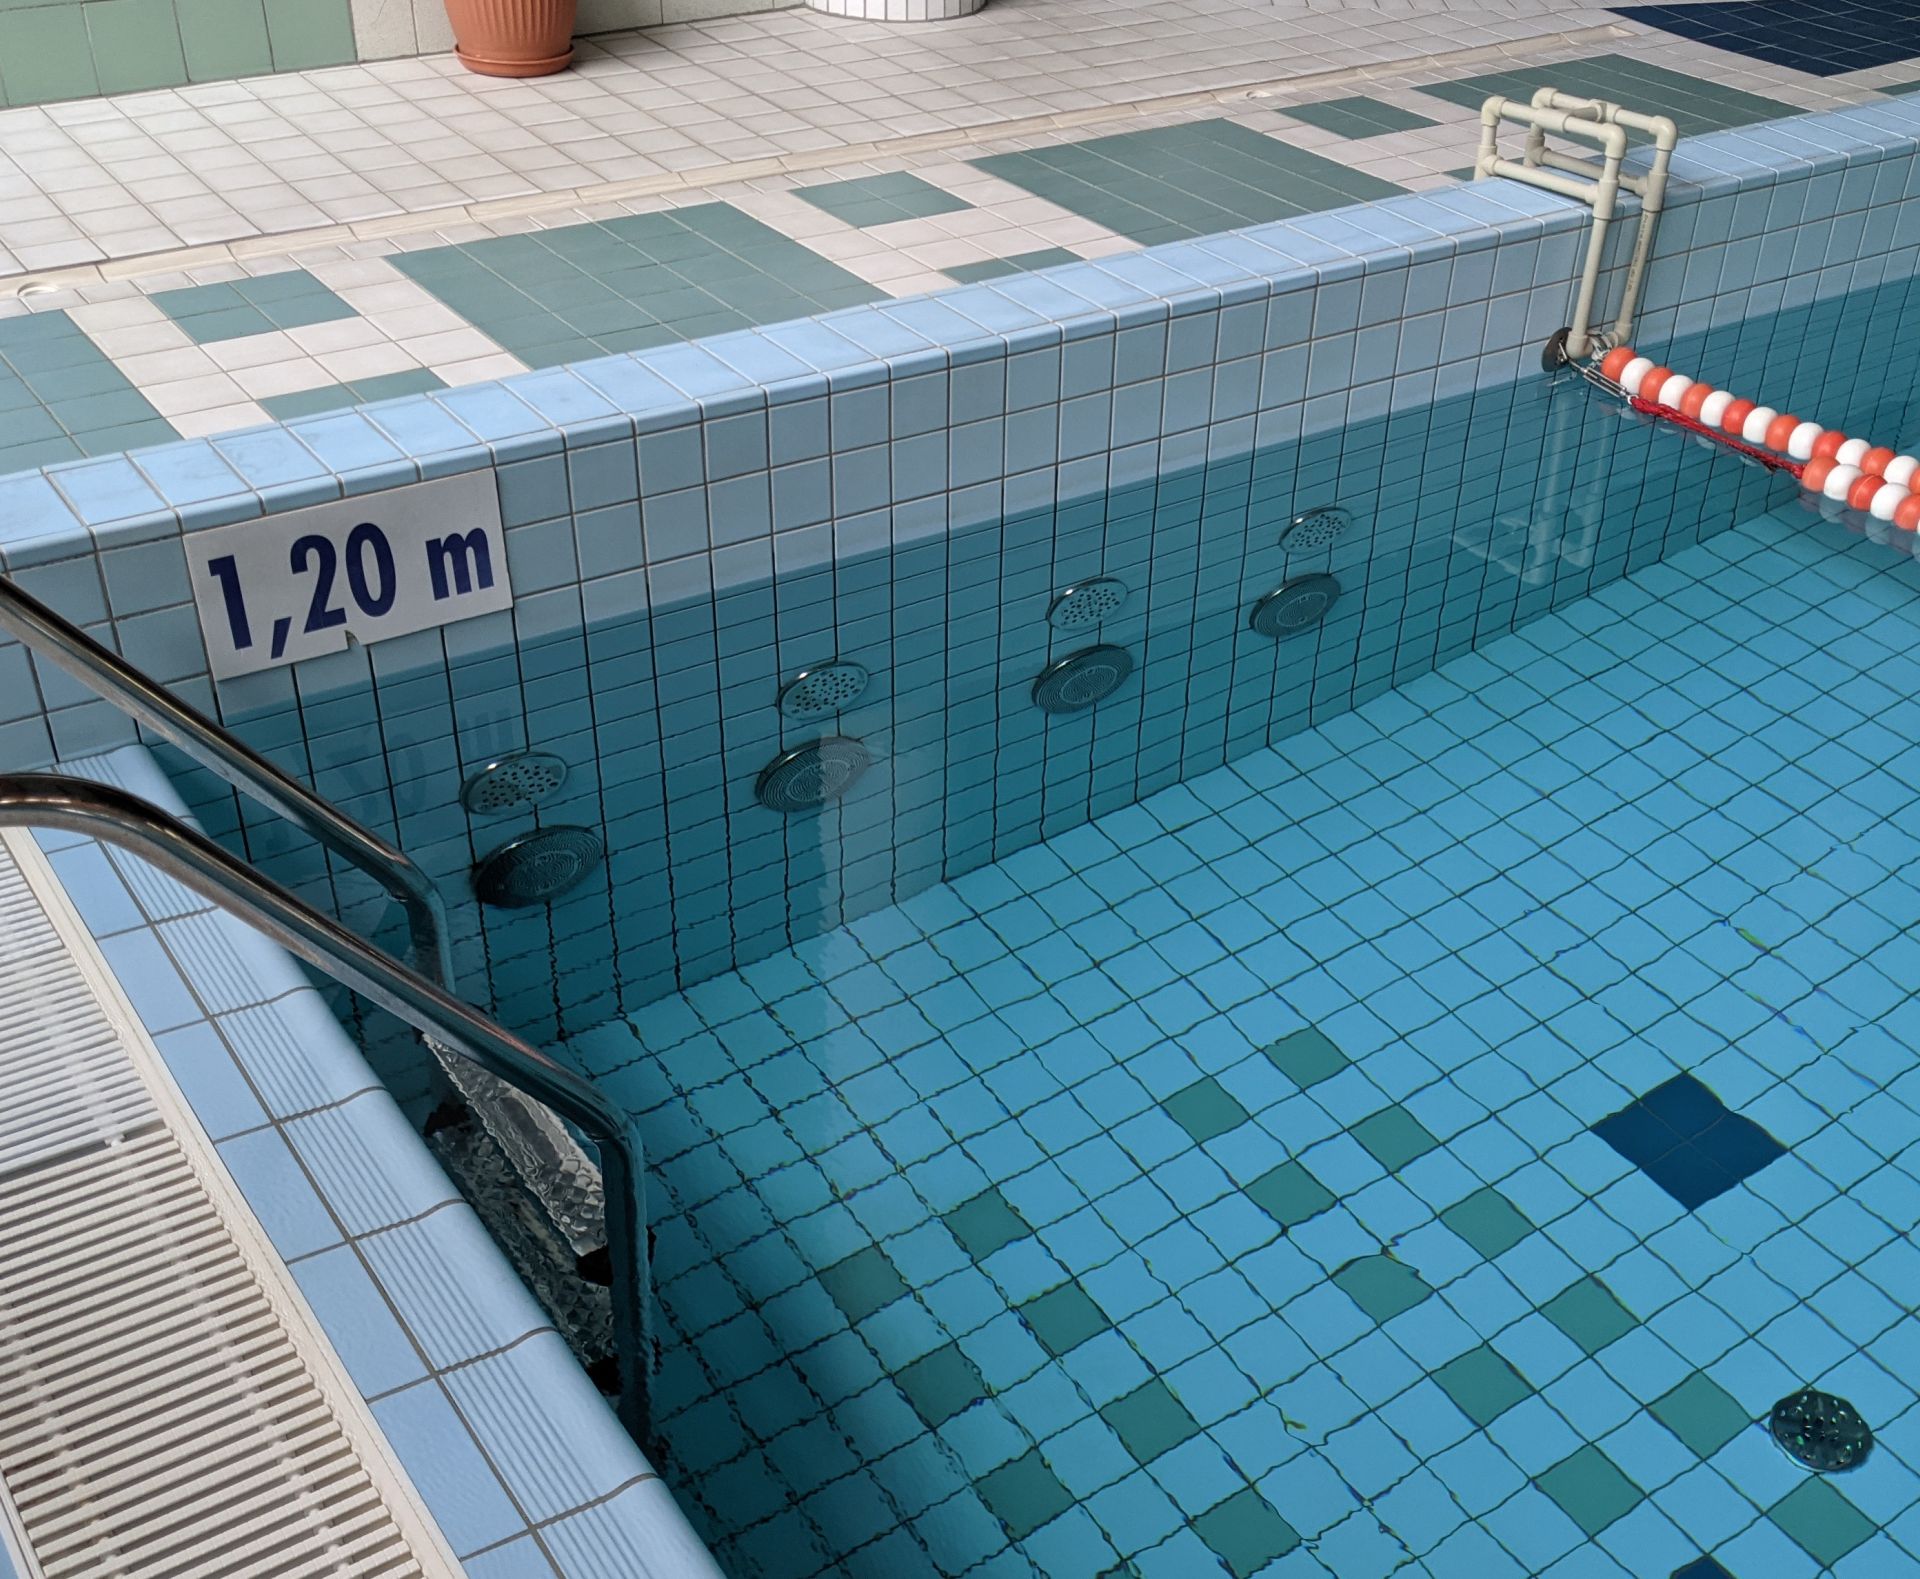 Masaż ścienny czterodyszowy umiejscowiony w basenie rekreacyjnym na ścianie basenu pod wodą. Wyłączony.